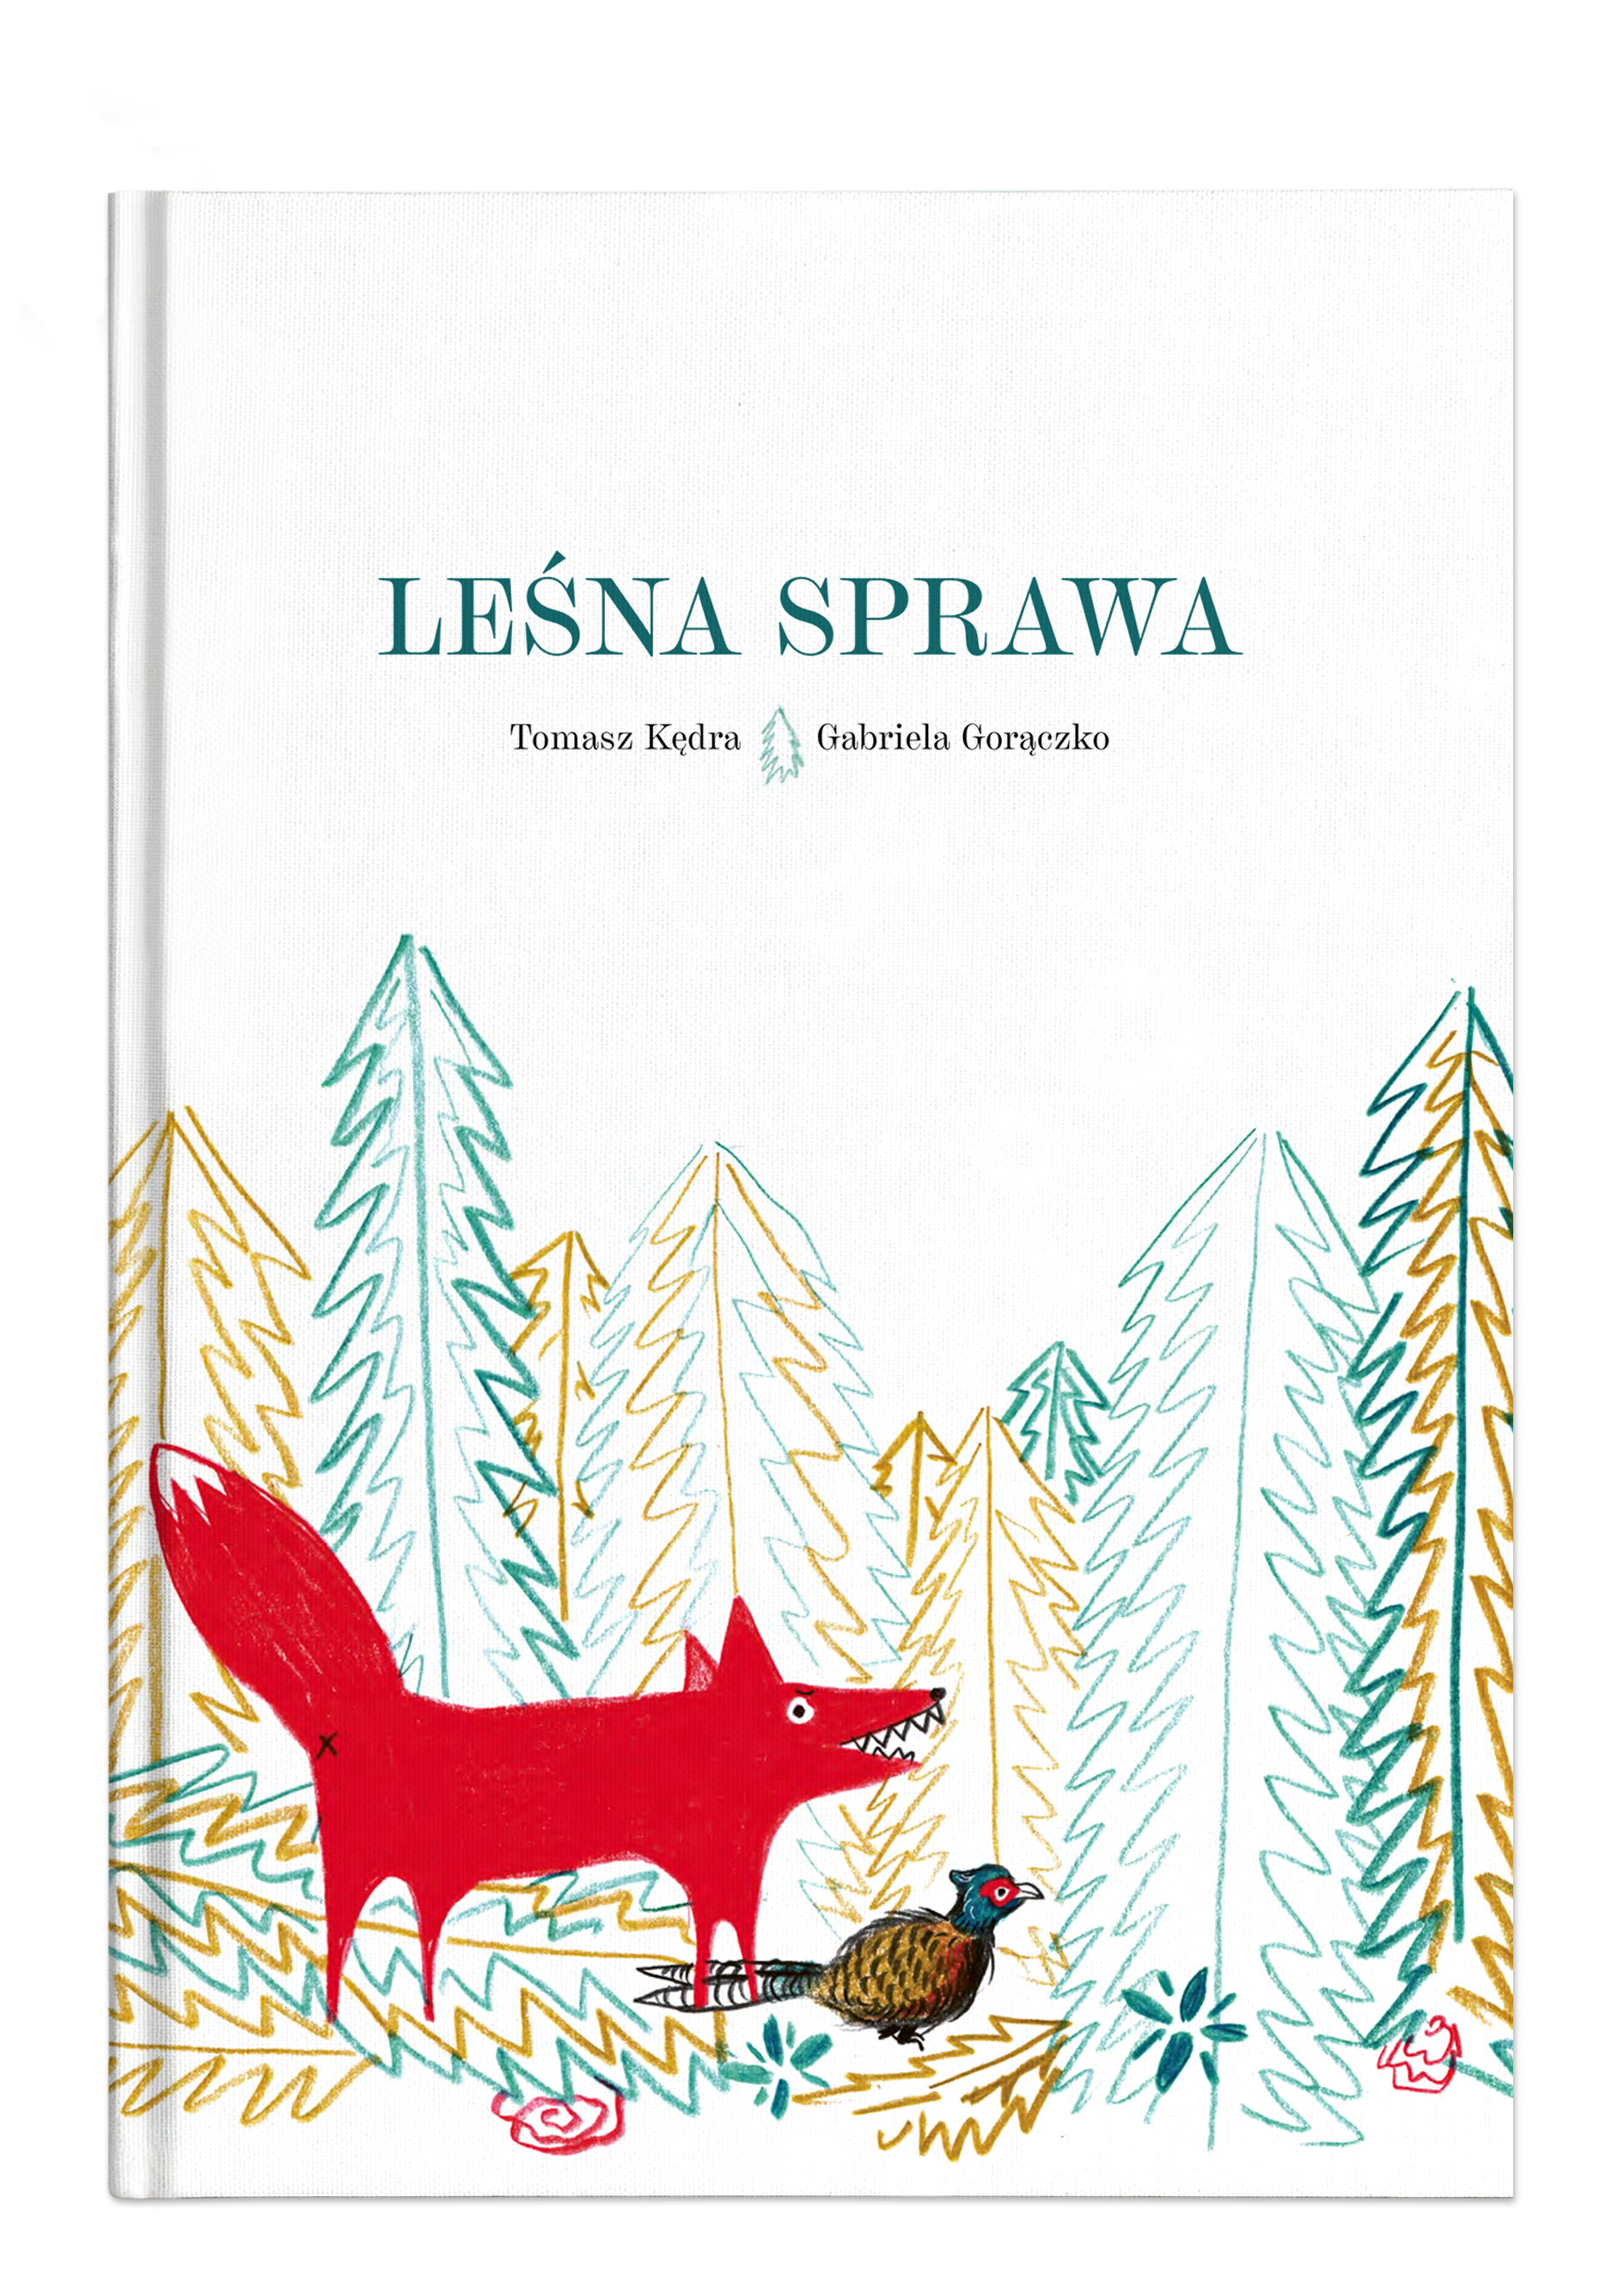 Leśna sprawa, tekst: Tomasz Kędra, ilustracje: Gabriela Gorączko, wydawca: Wydawnictwo Wolno